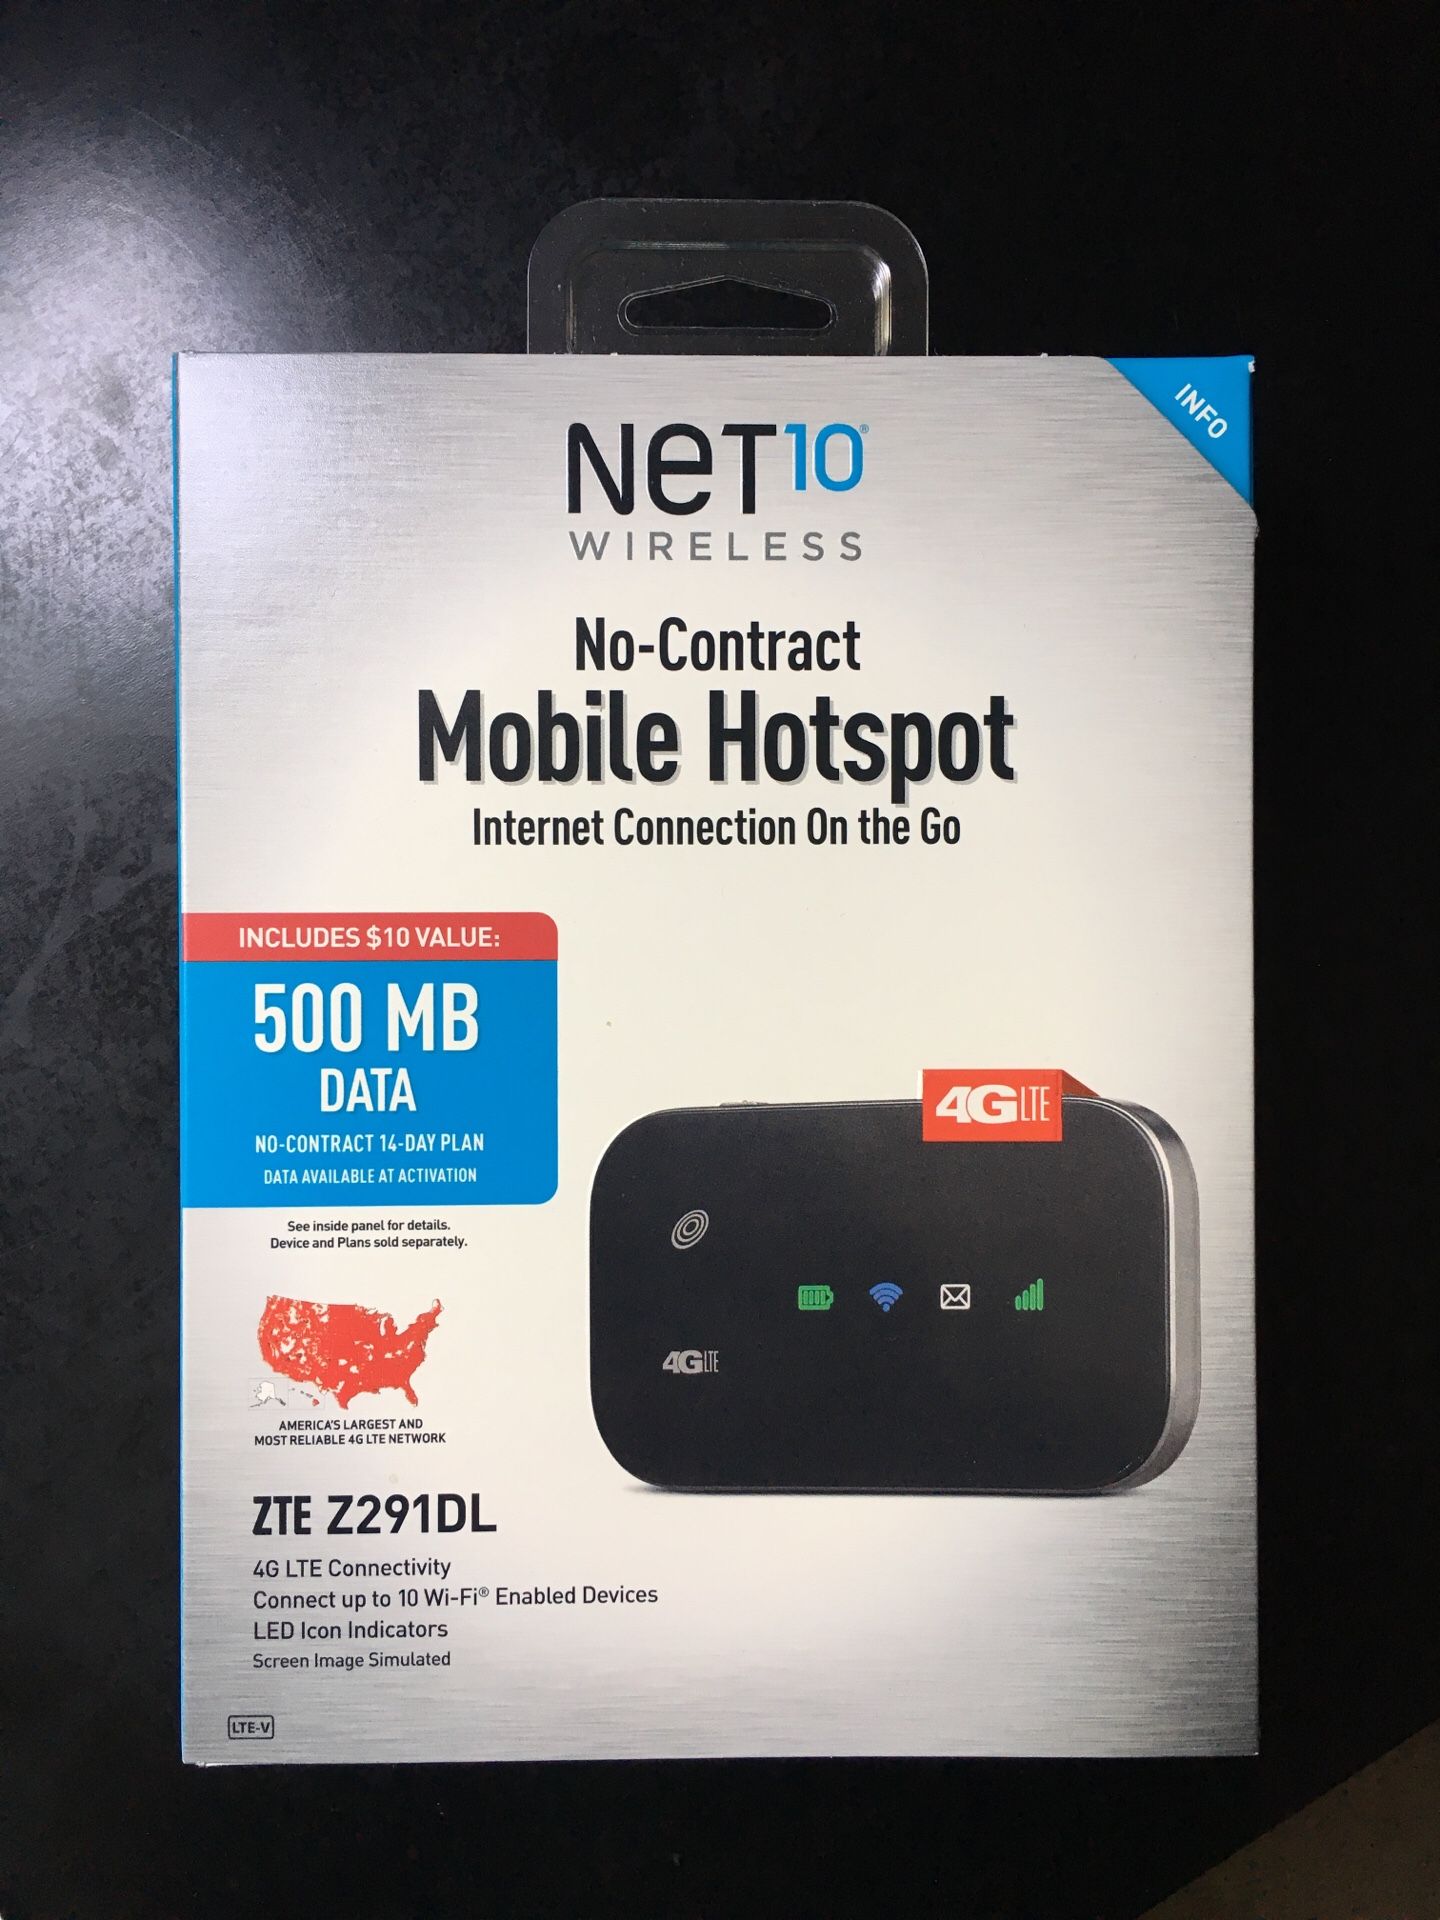 Net 10 Wireless Mobile Hotspot